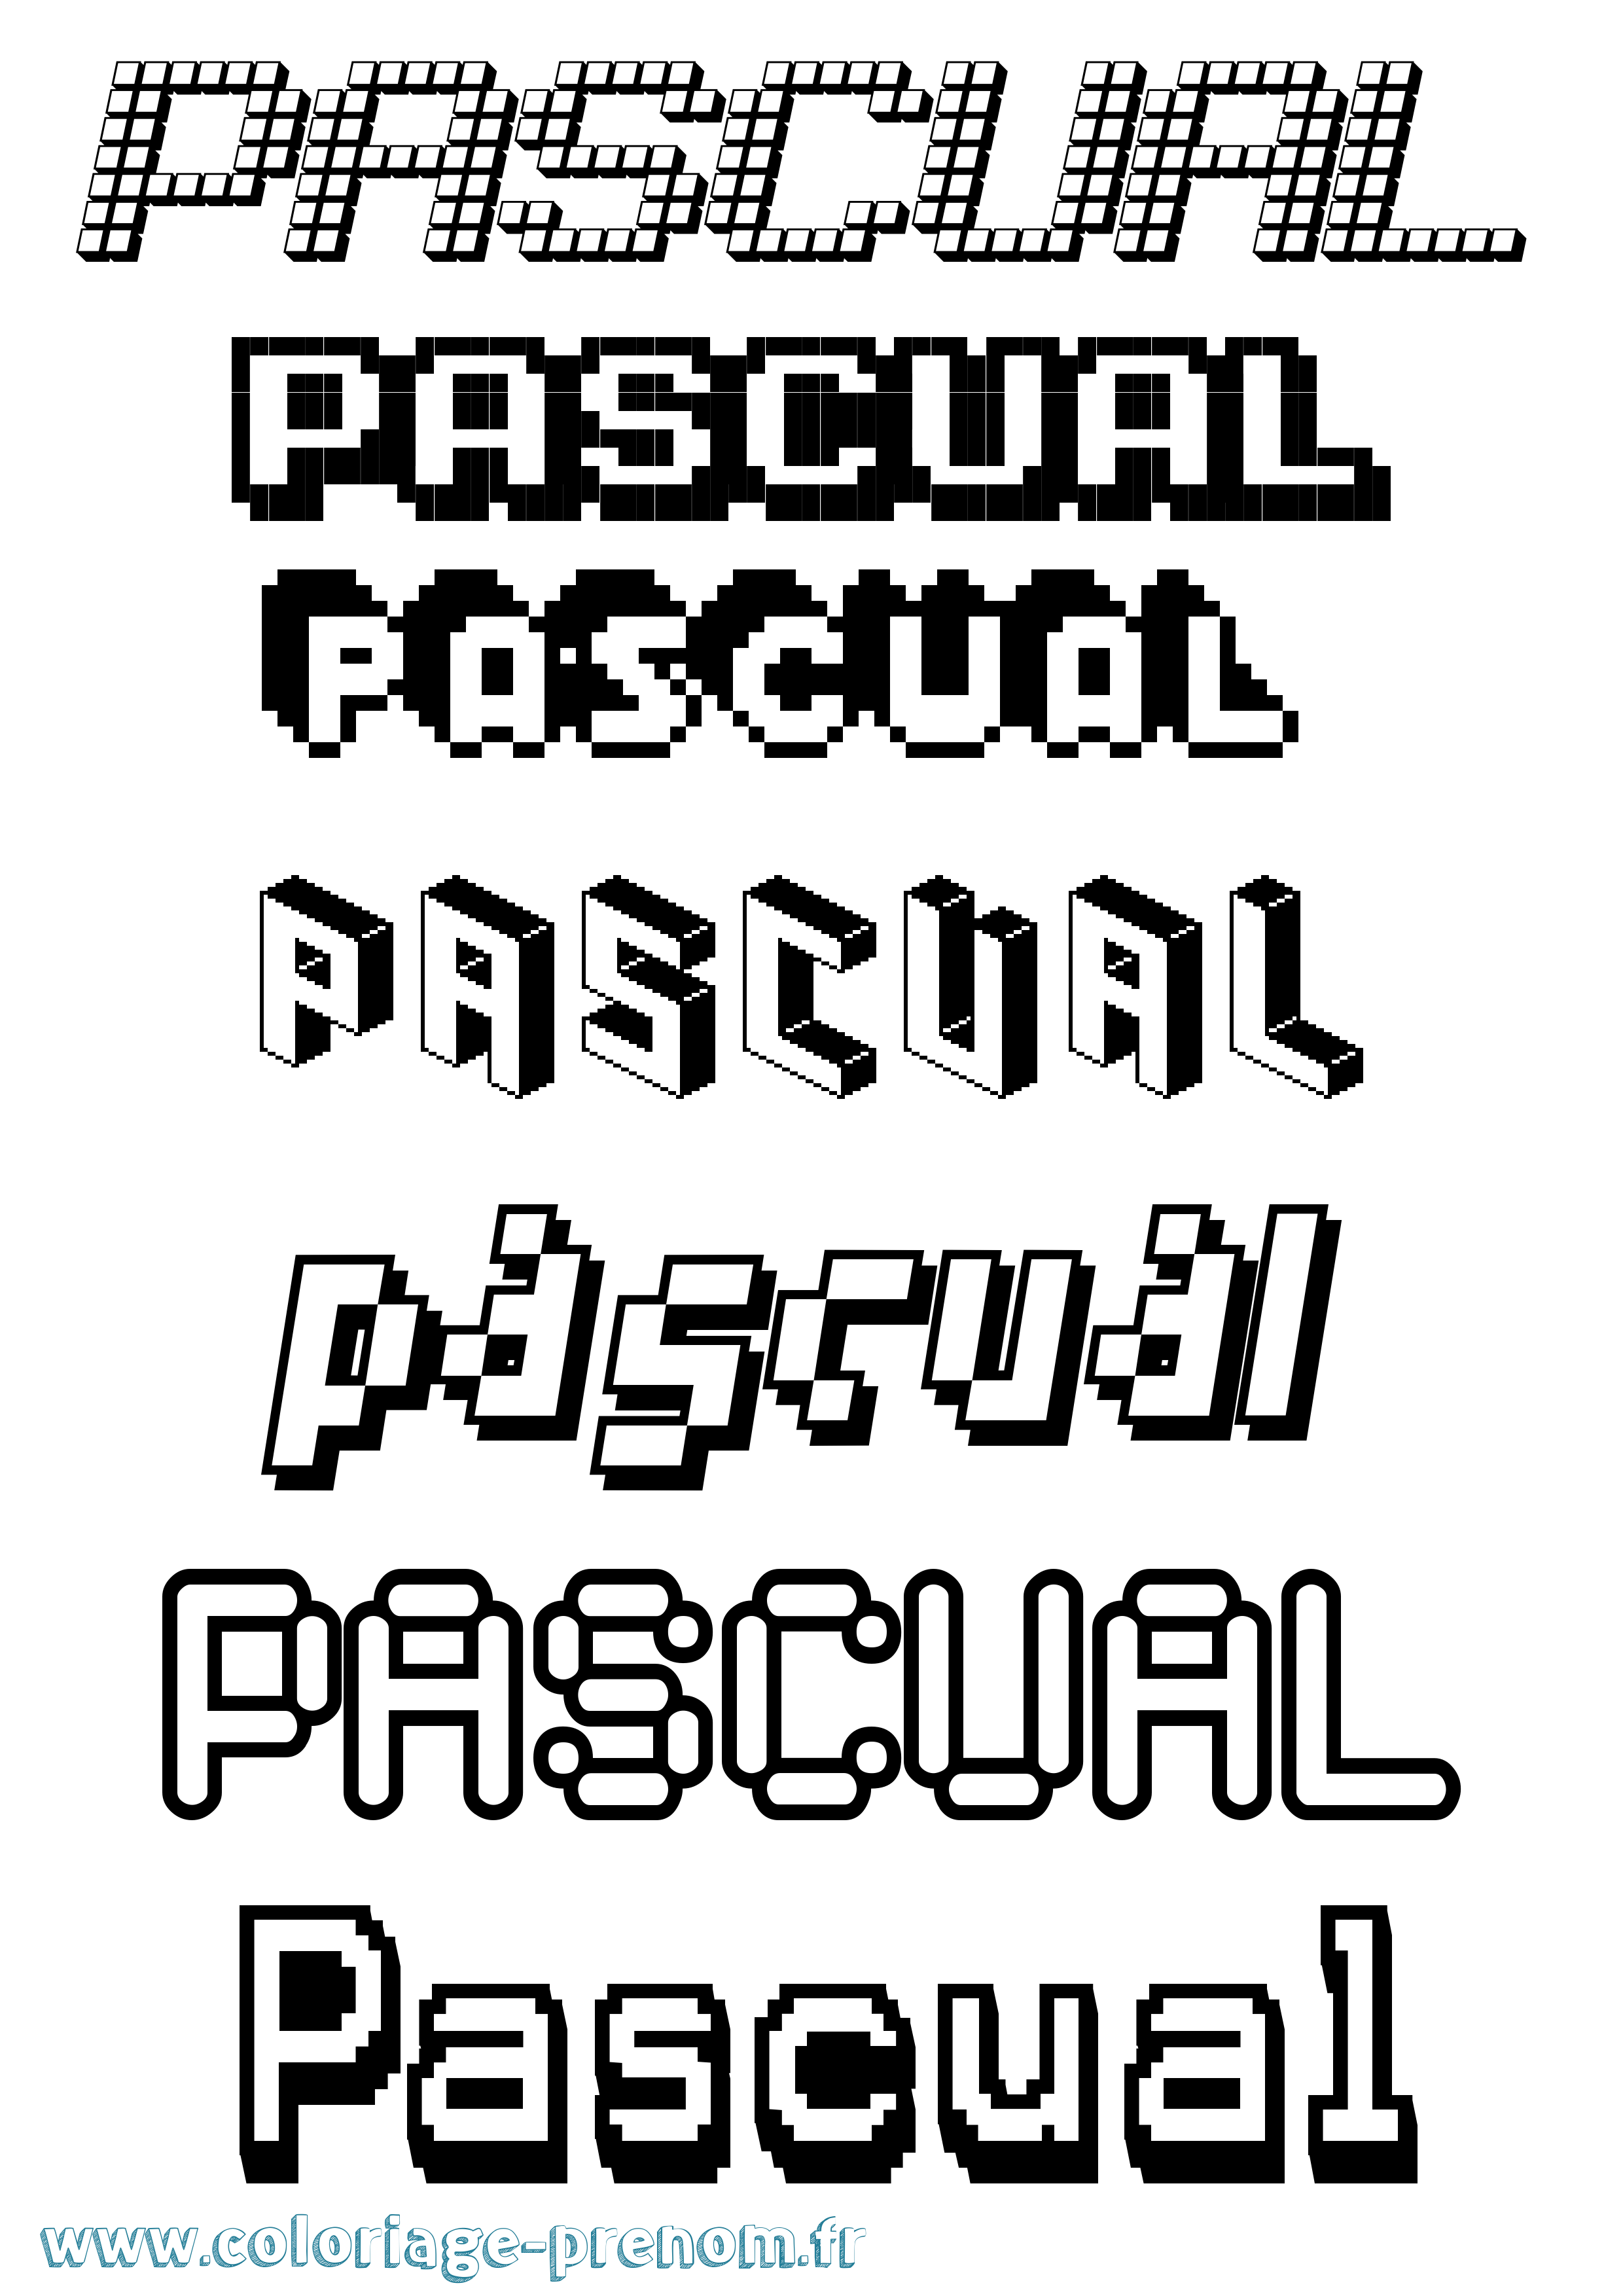 Coloriage prénom Pascual Pixel